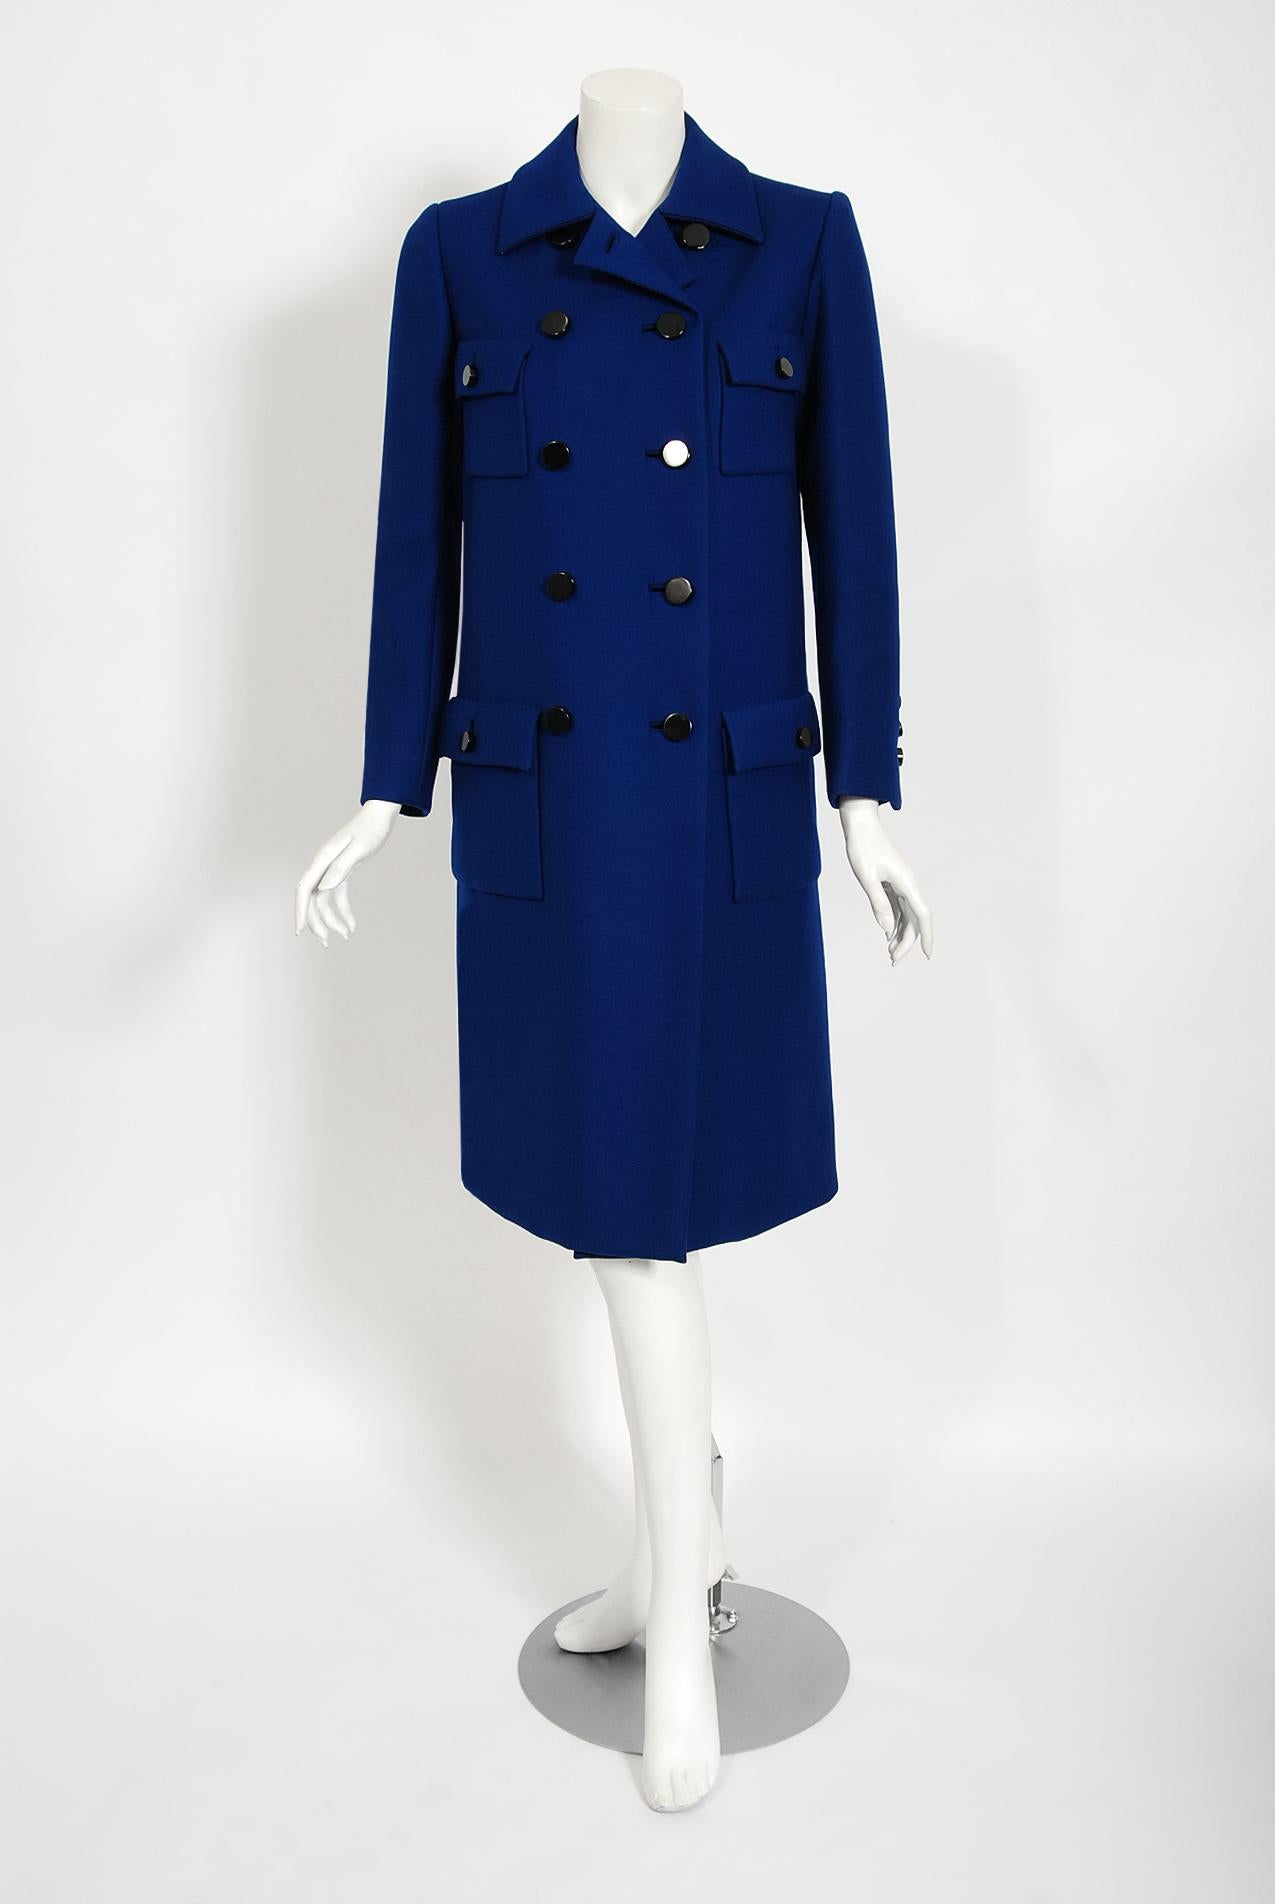 Dieser zeitlose Norman Norell-Mantel in schickem Königsblau ist ein Beispiel für die für ihn typische Mischung aus Couture-Qualität und typisch amerikanischem Stil. Dieses prächtige Kleidungsstück aus der Herbst-Winter-Kollektion 1969-70 hat eine